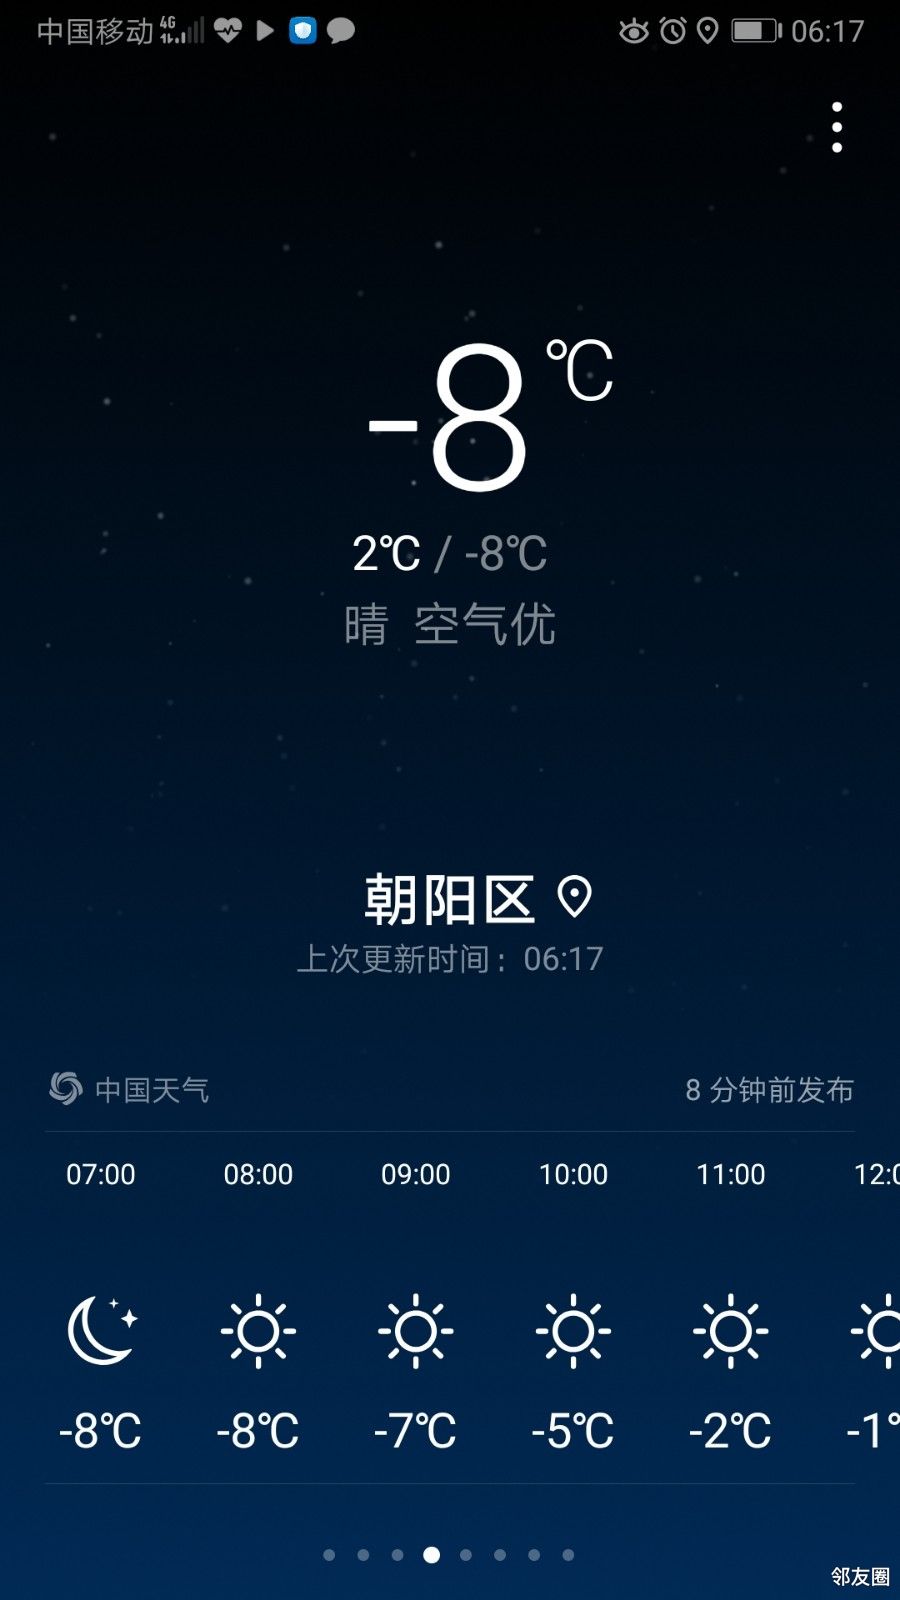 刚天气预报,今晨,零下92℃!出门早的注意保暖!